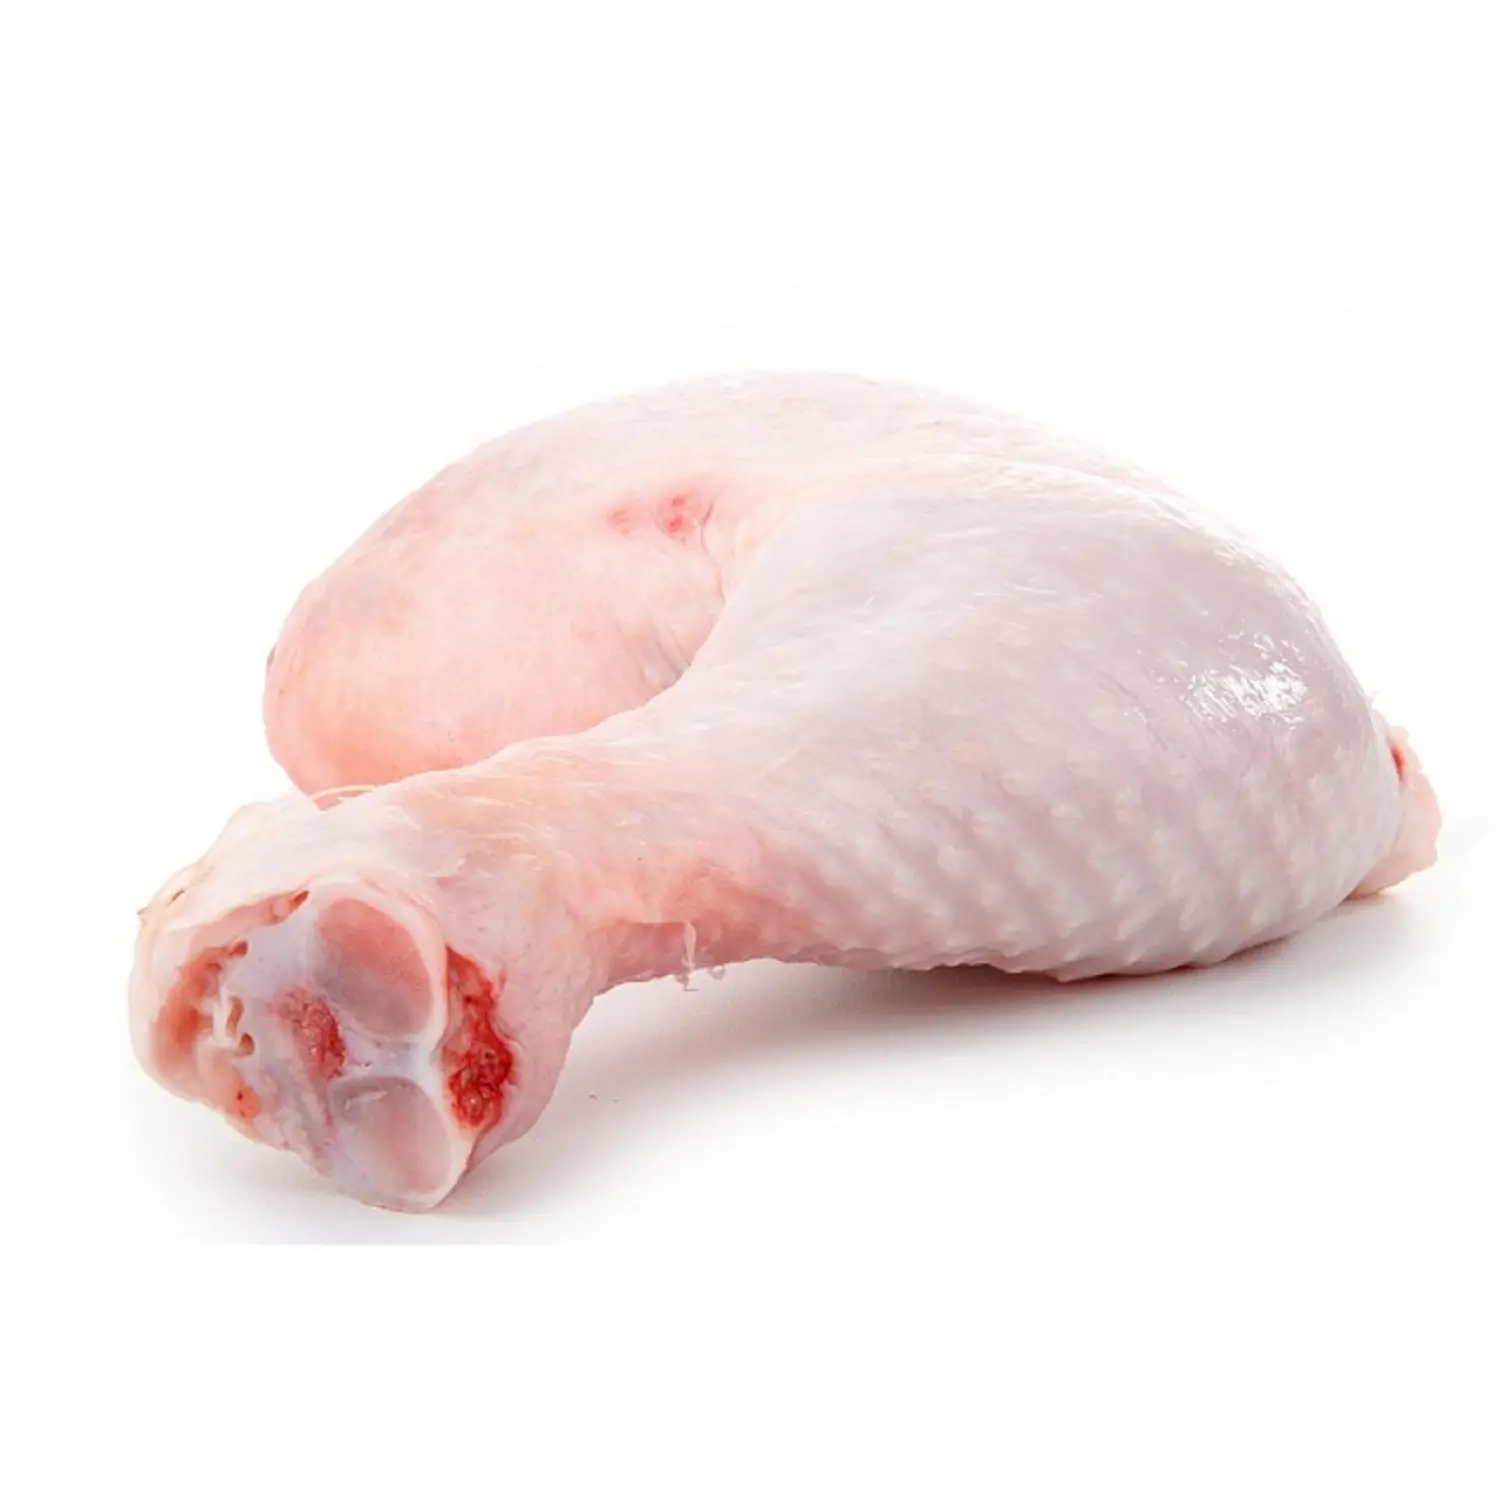 Frisch gefrorene Hühner füße/Hühner trommel stock/gefrorenes Viertel Hühner bein Günstiger Preis